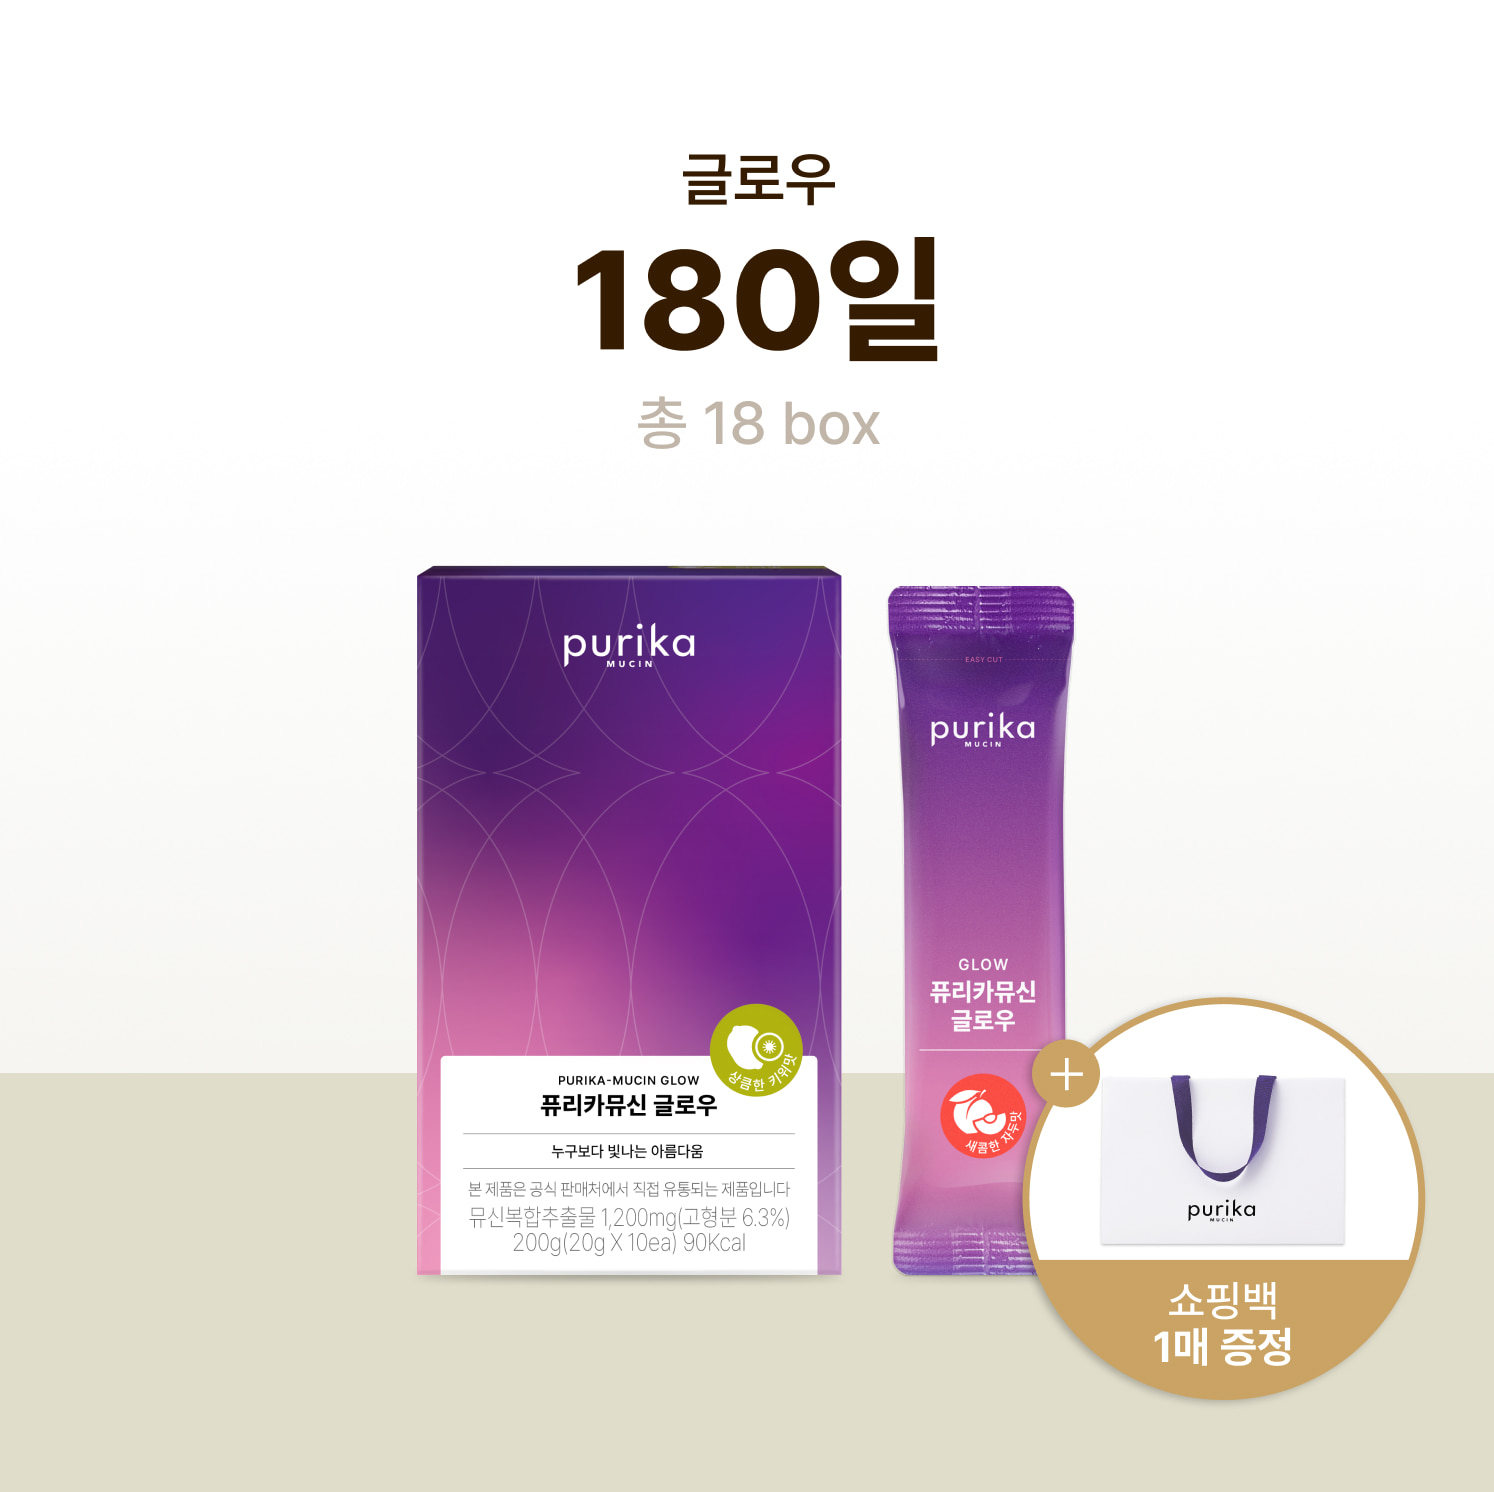 뮤신 글로우 (18box, 180일) + 쇼핑백 증정(1매)